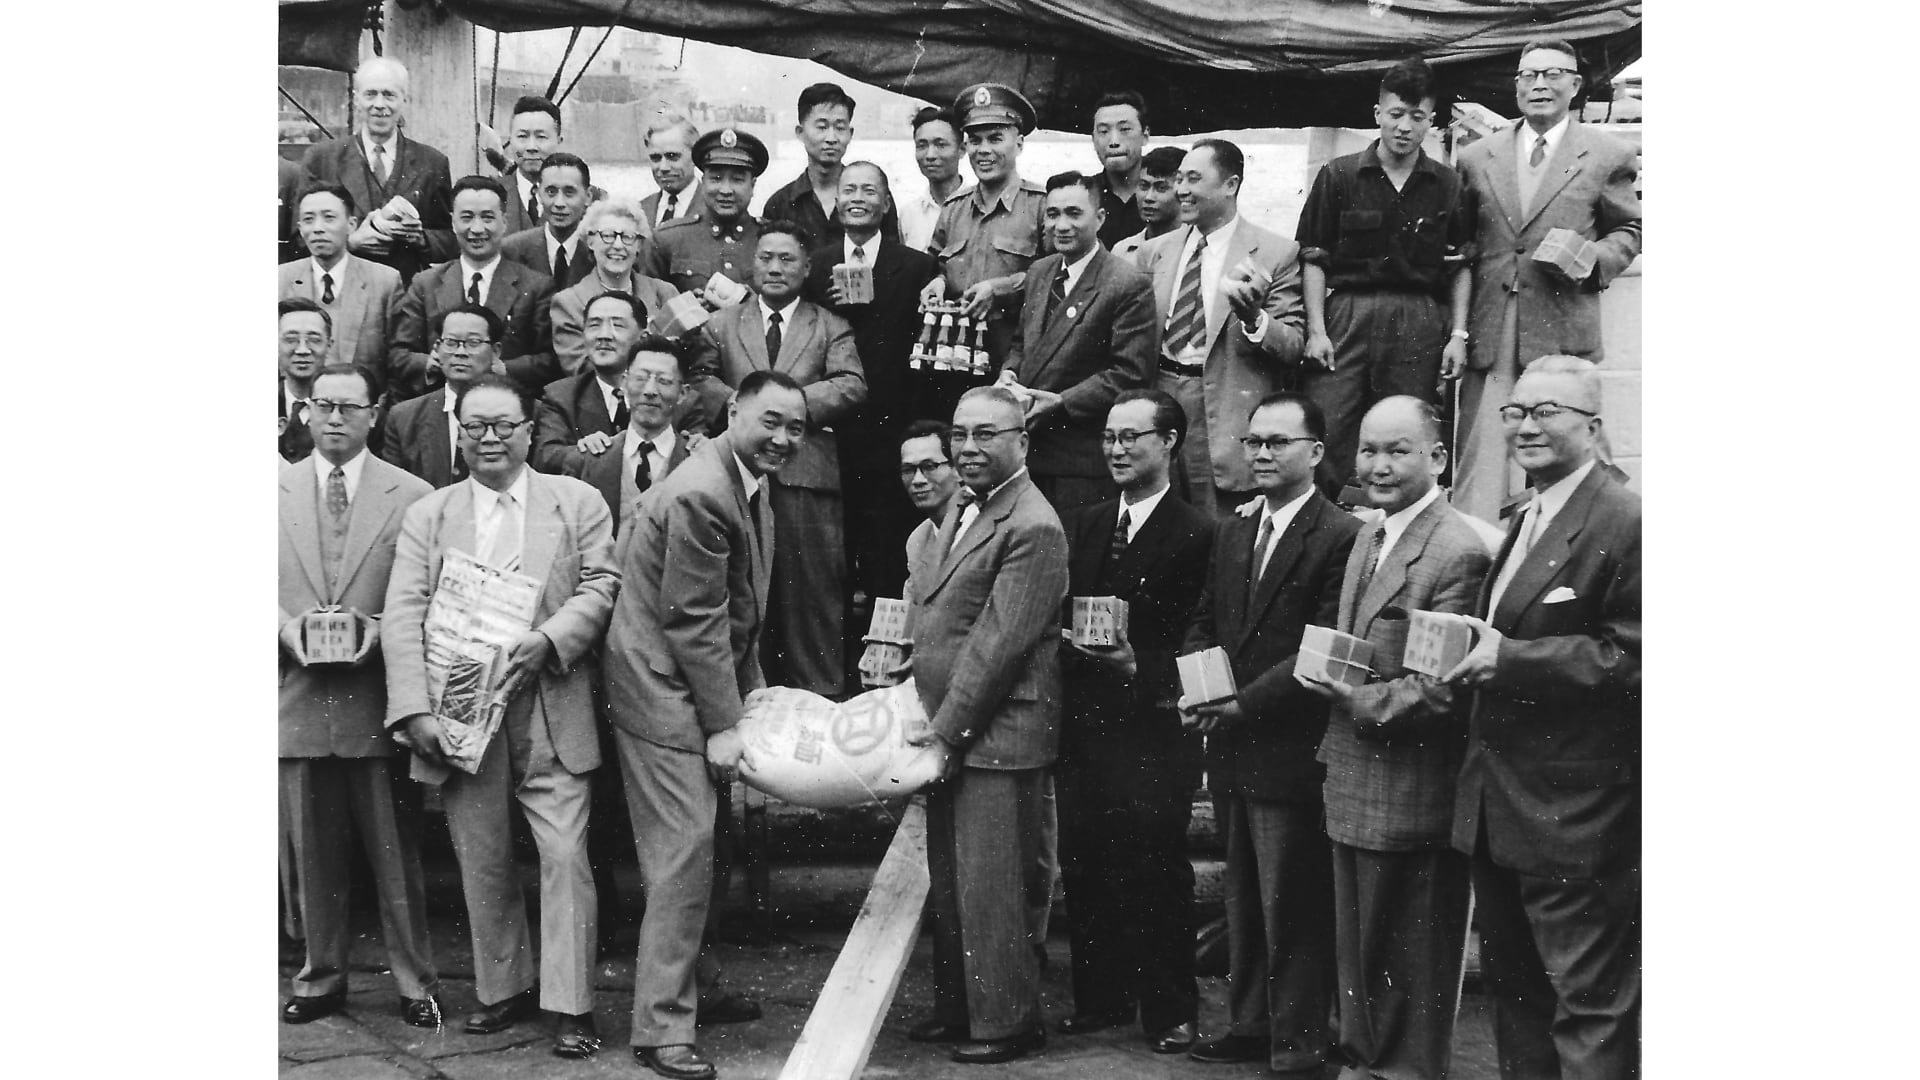 رحلة العمر.. عبر 5 صيادين ودبلوماسي ودجاجتين المحيط الهادئ في قارب خردة صيني قبل 60 عاما